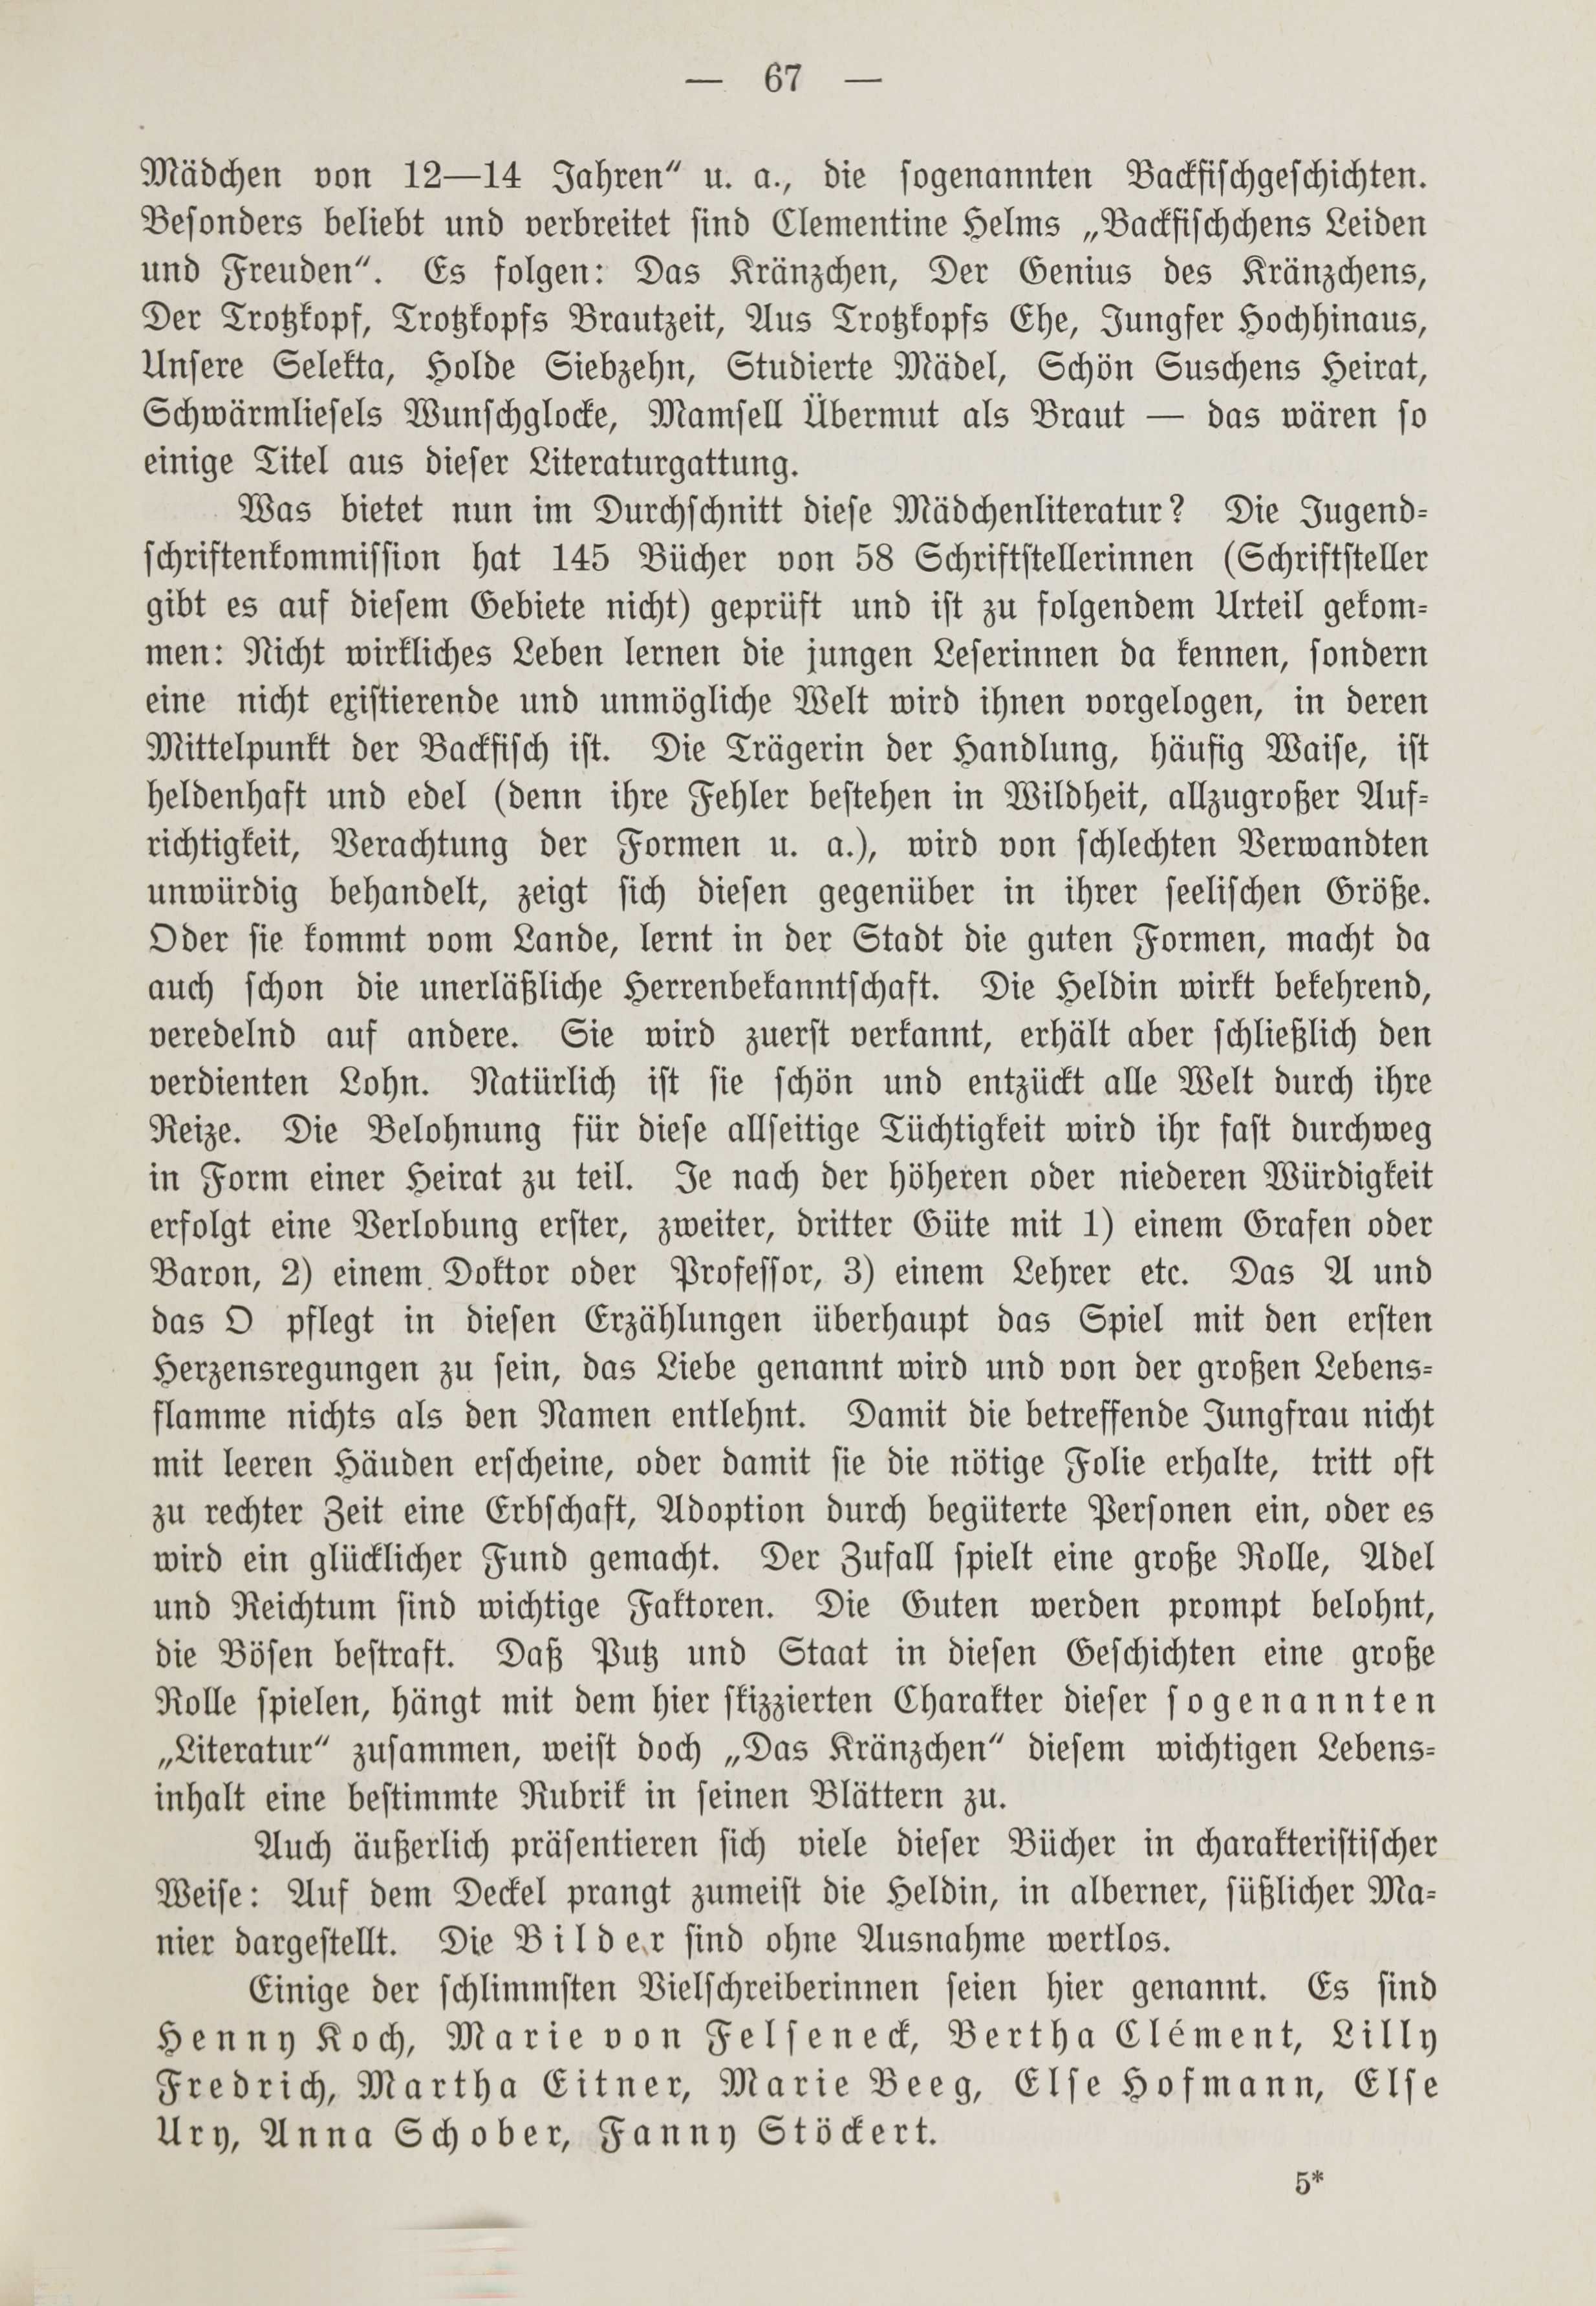 Deutsche Monatsschrift für Russland [1] (1912) | 74. (67) Основной текст